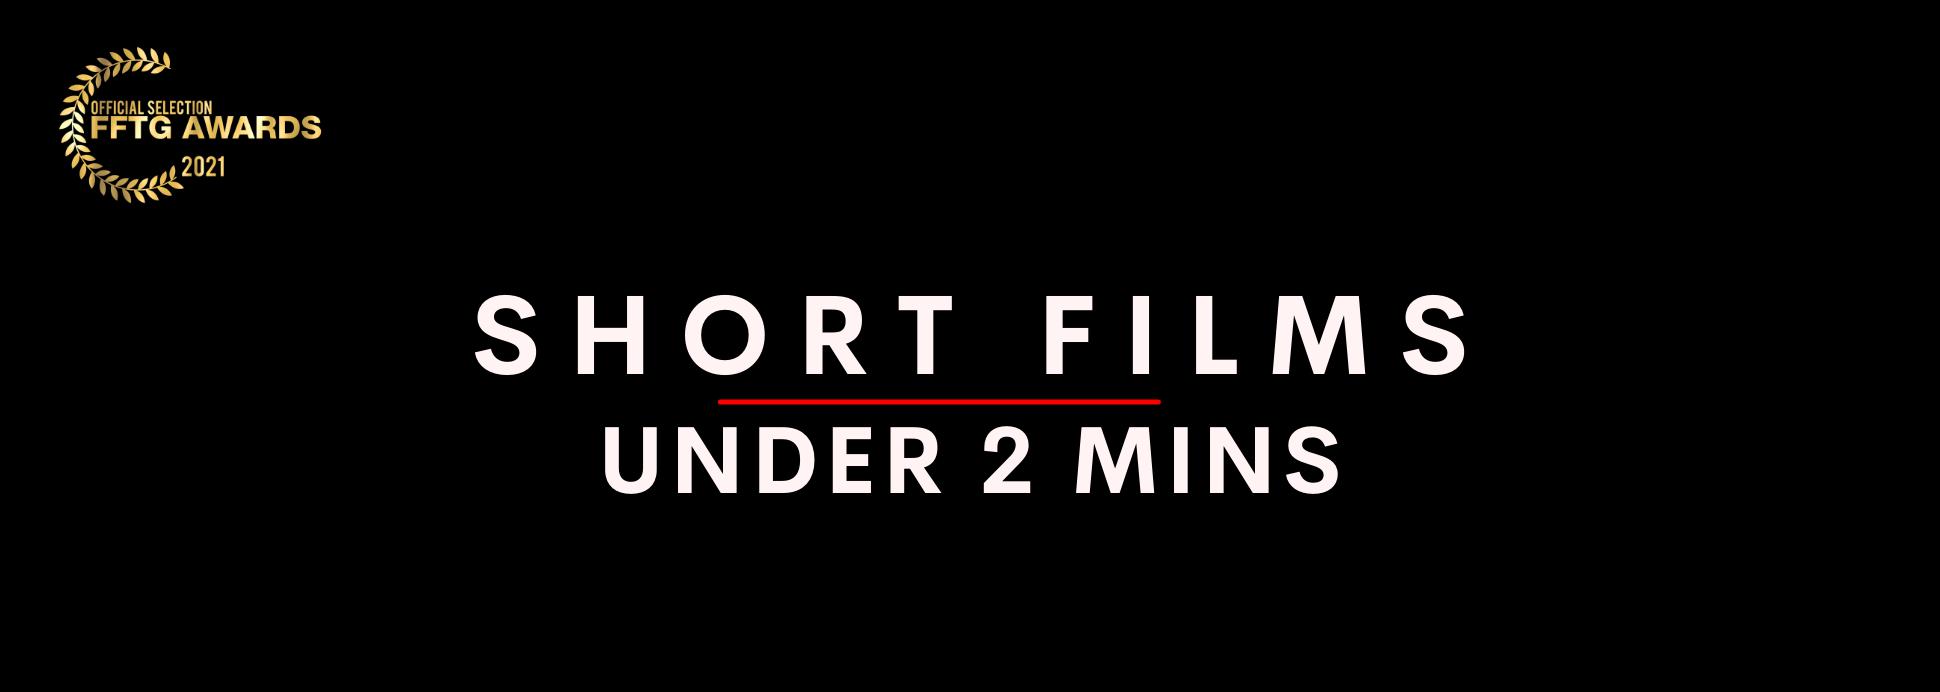 Short films under 2 mins 